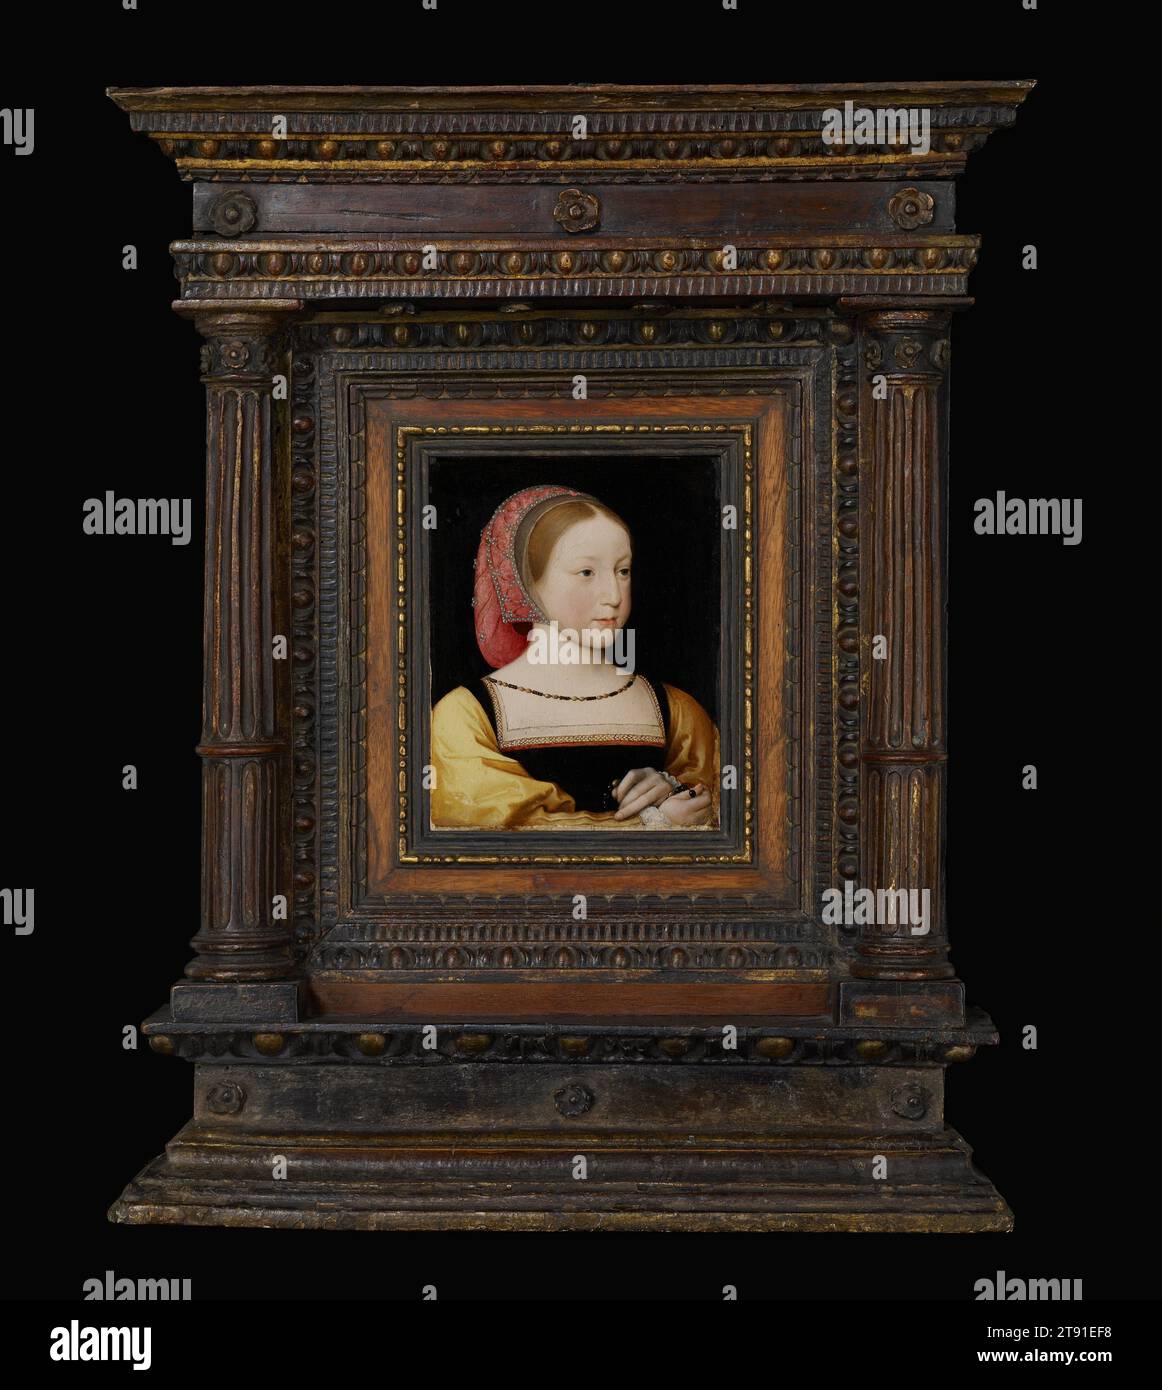 Portrait de Charlotte de France, c. 1522, Jean Clouet le Jeune, Français (Paris), Français (Paris), 1475–1541, 7 x 5 1/4 x 3/16 po. (17,78 x 13,34 x 0,4 cm) (panneau), huile sur panneau bercé, France, 16e siècle, la princesse Charlotte était la fille du roi François Ier de France, dont la cour était un centre international des arts Ses vêtements riches et sa casquette ornée de bijoux montrent son statut élevé. Son rosaire indique qu'elle était une fervente catholique. Elle avait environ sept ans au moment de ce portrait, et elle est morte à l'âge de huit ans. Les familles royales européennes commandent des portraits de leurs enfants Banque D'Images